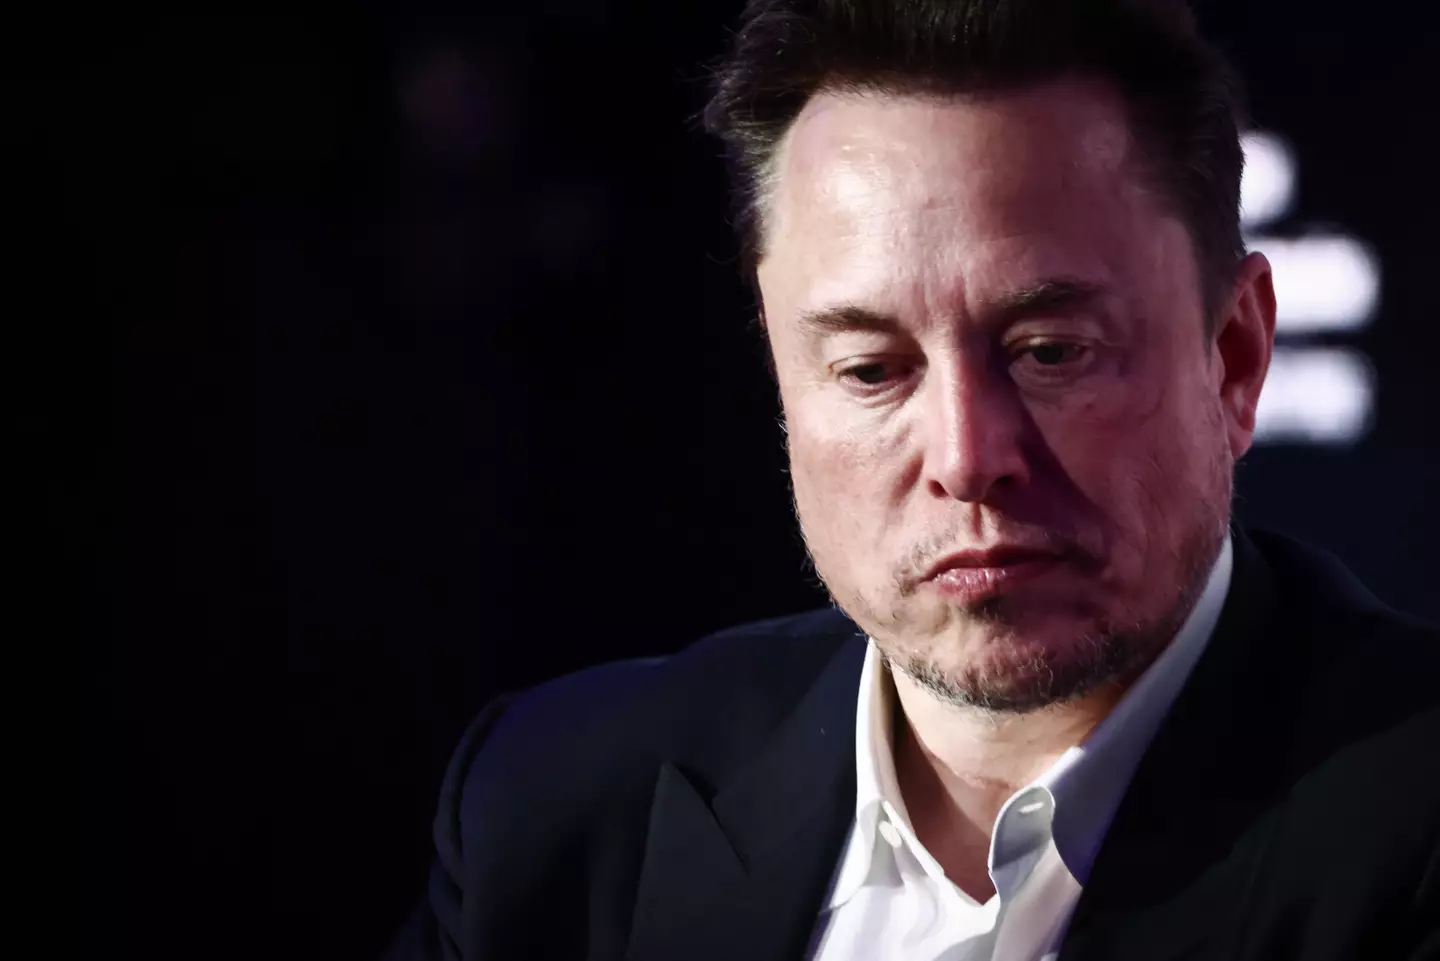 Elon Musk is no longer the world's richest man.